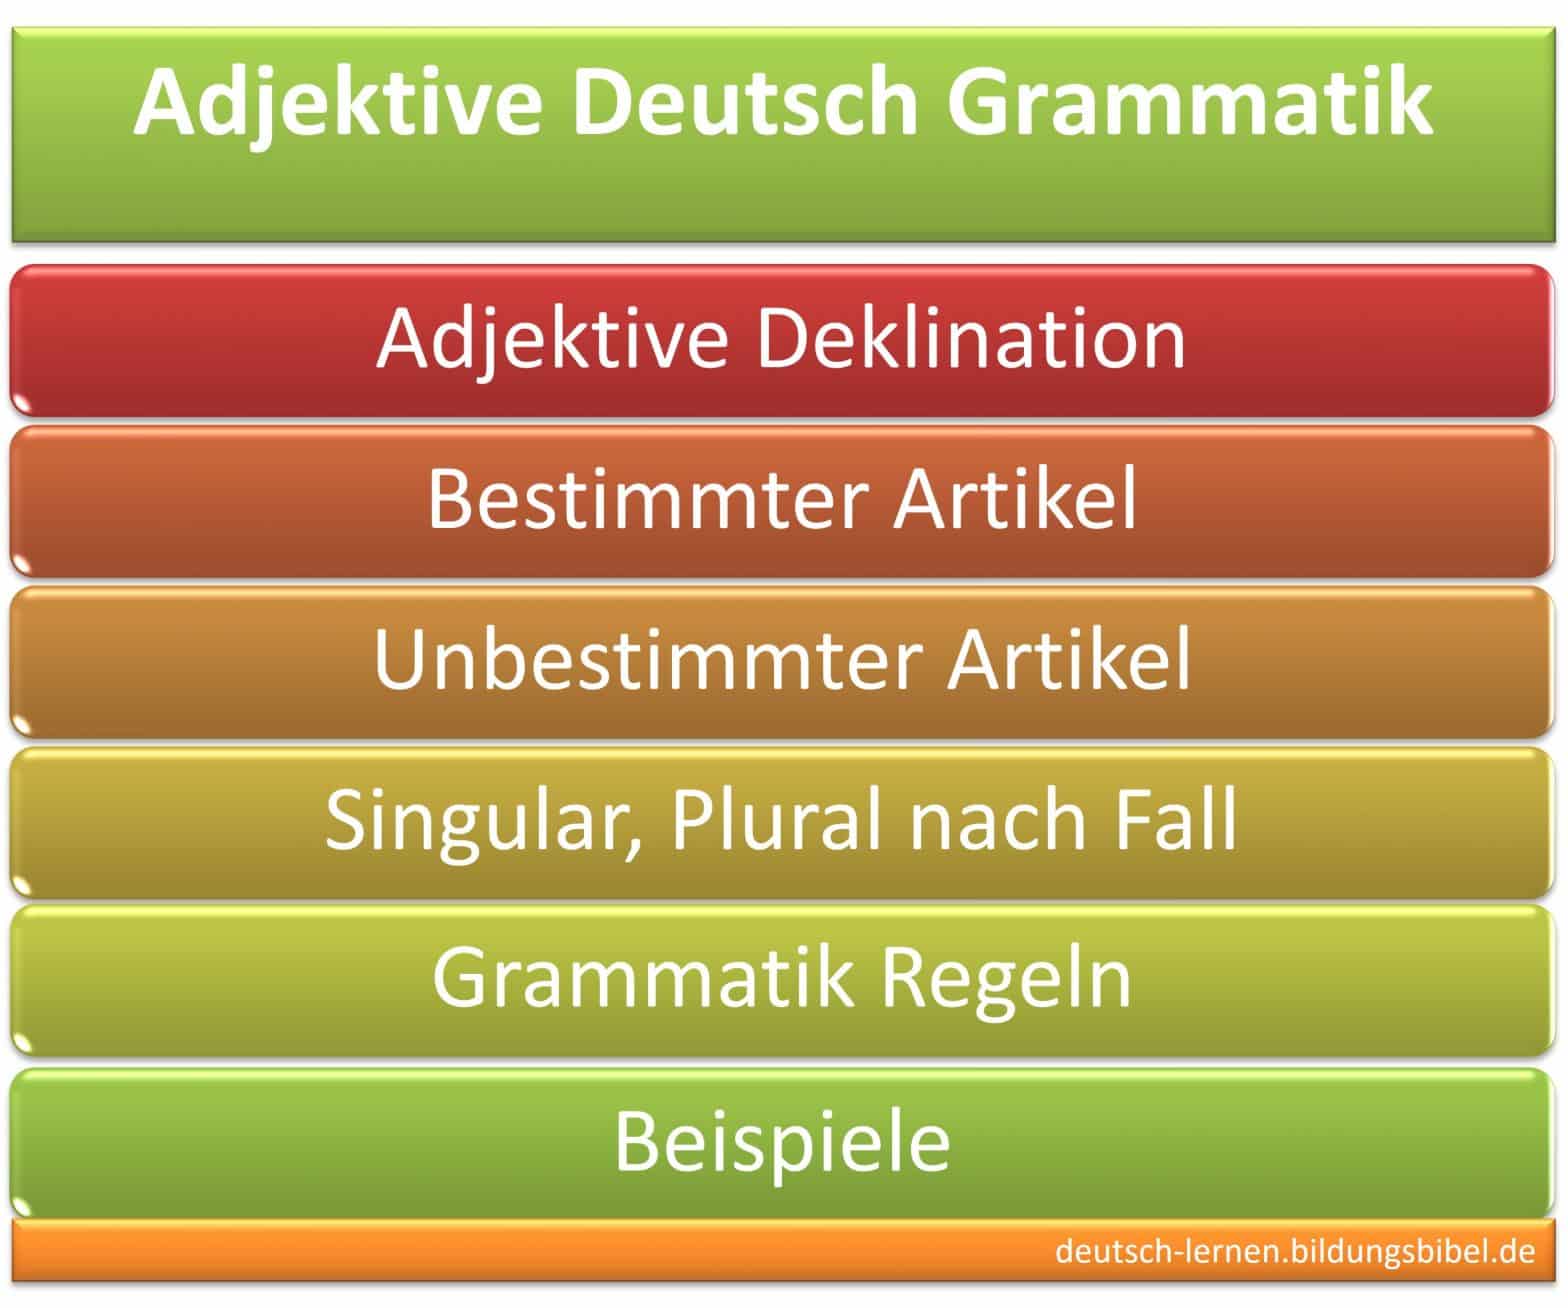 Deklination Adjektive, Beispiele, Regeln, Deutsch Grammatik, bestimmter, unbestimmter Artikel, Singular, Plural, Kasus, Adjektivdeklination.